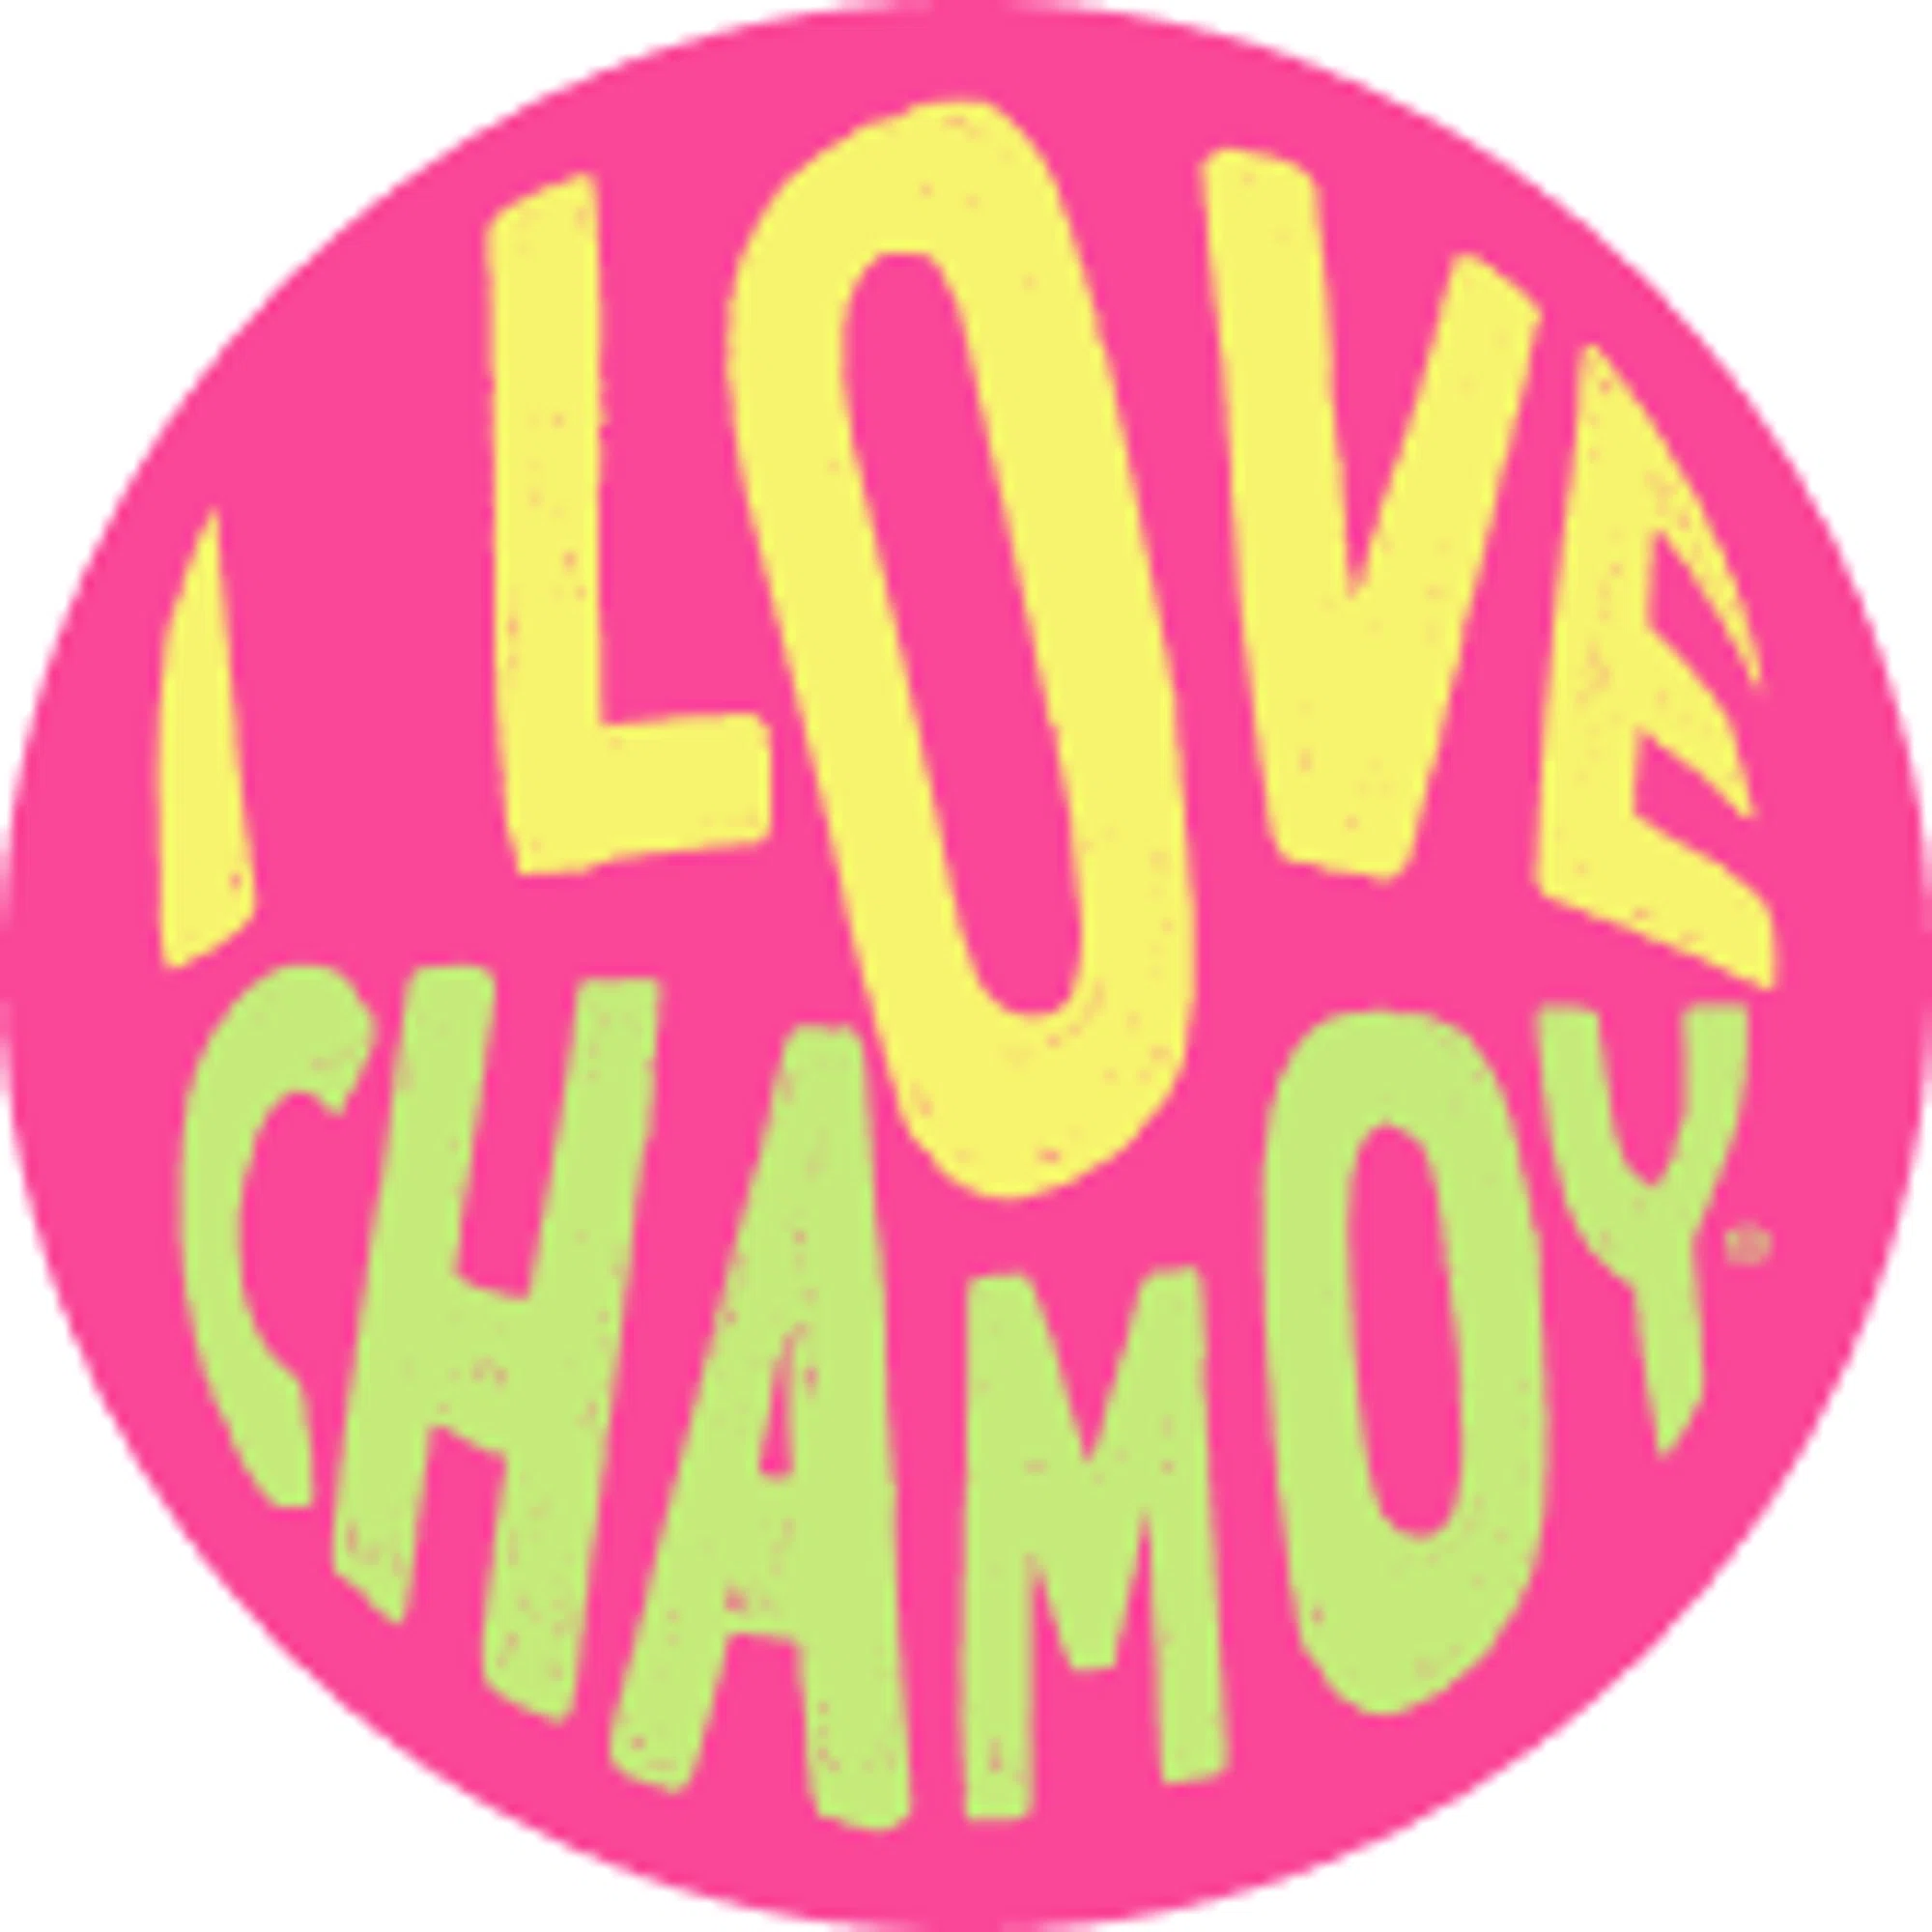 I Love Chamoy Merchant logo